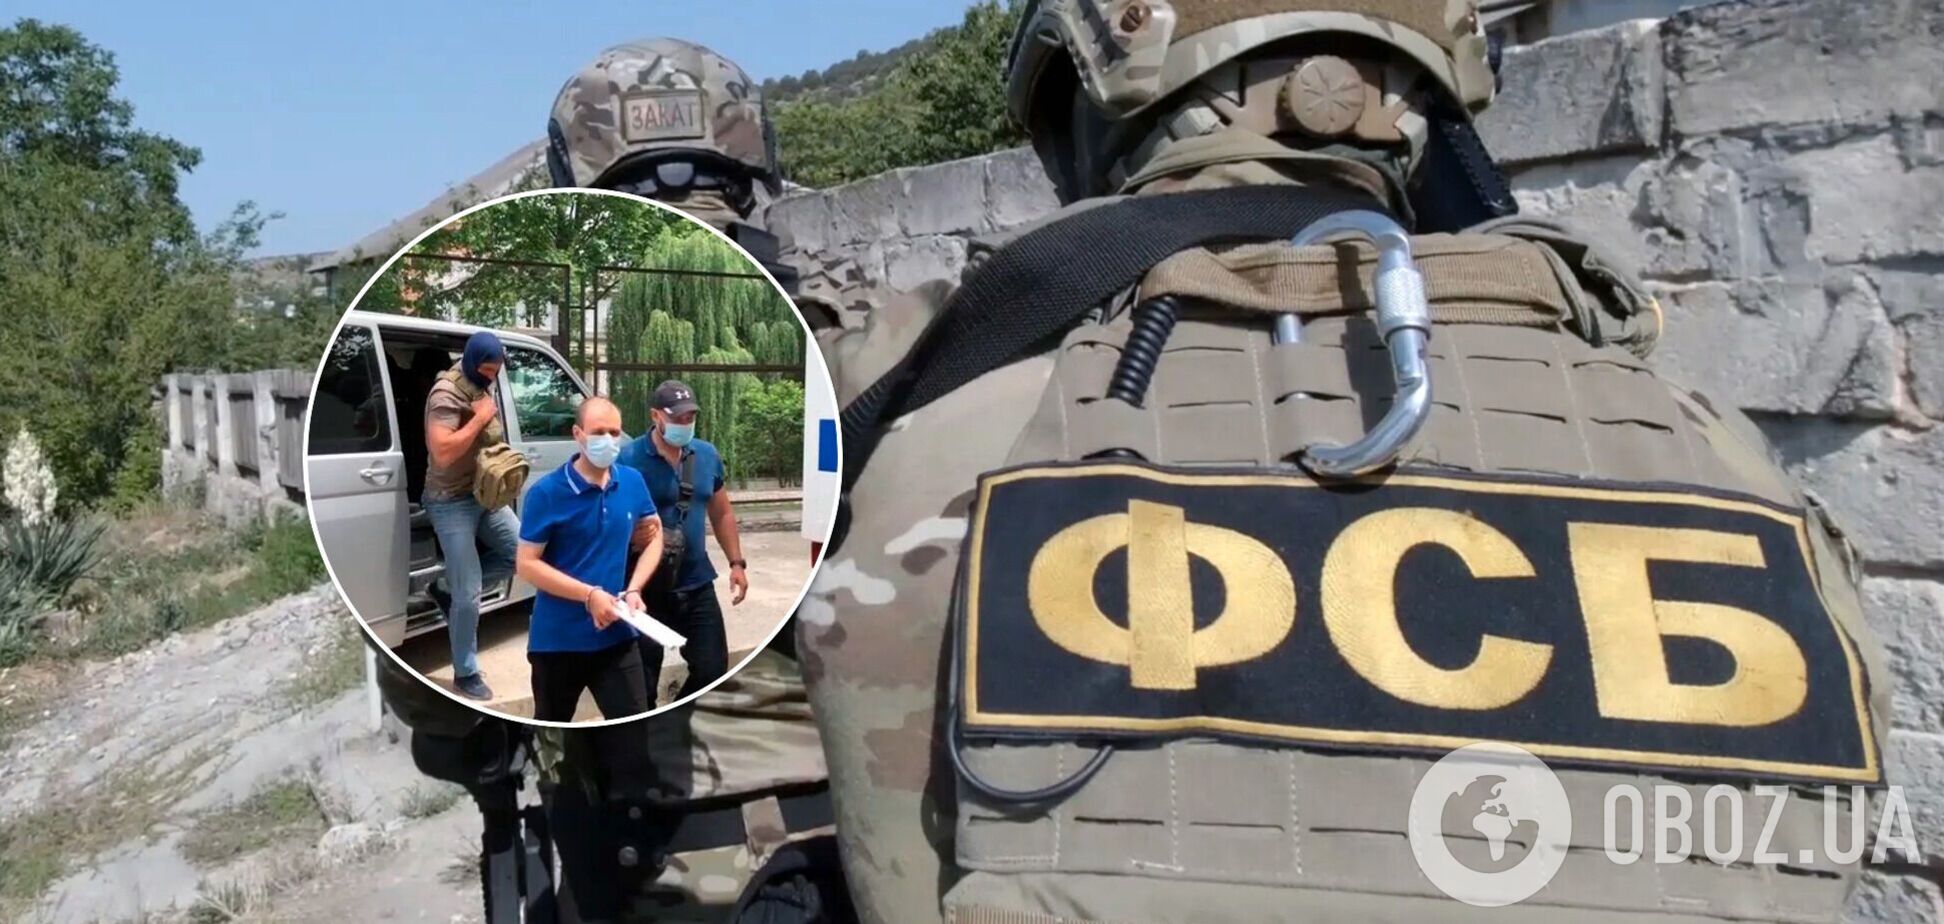 В Крыму задержали мужчину, обвинив в работе на украинские спецслужбы. Видео